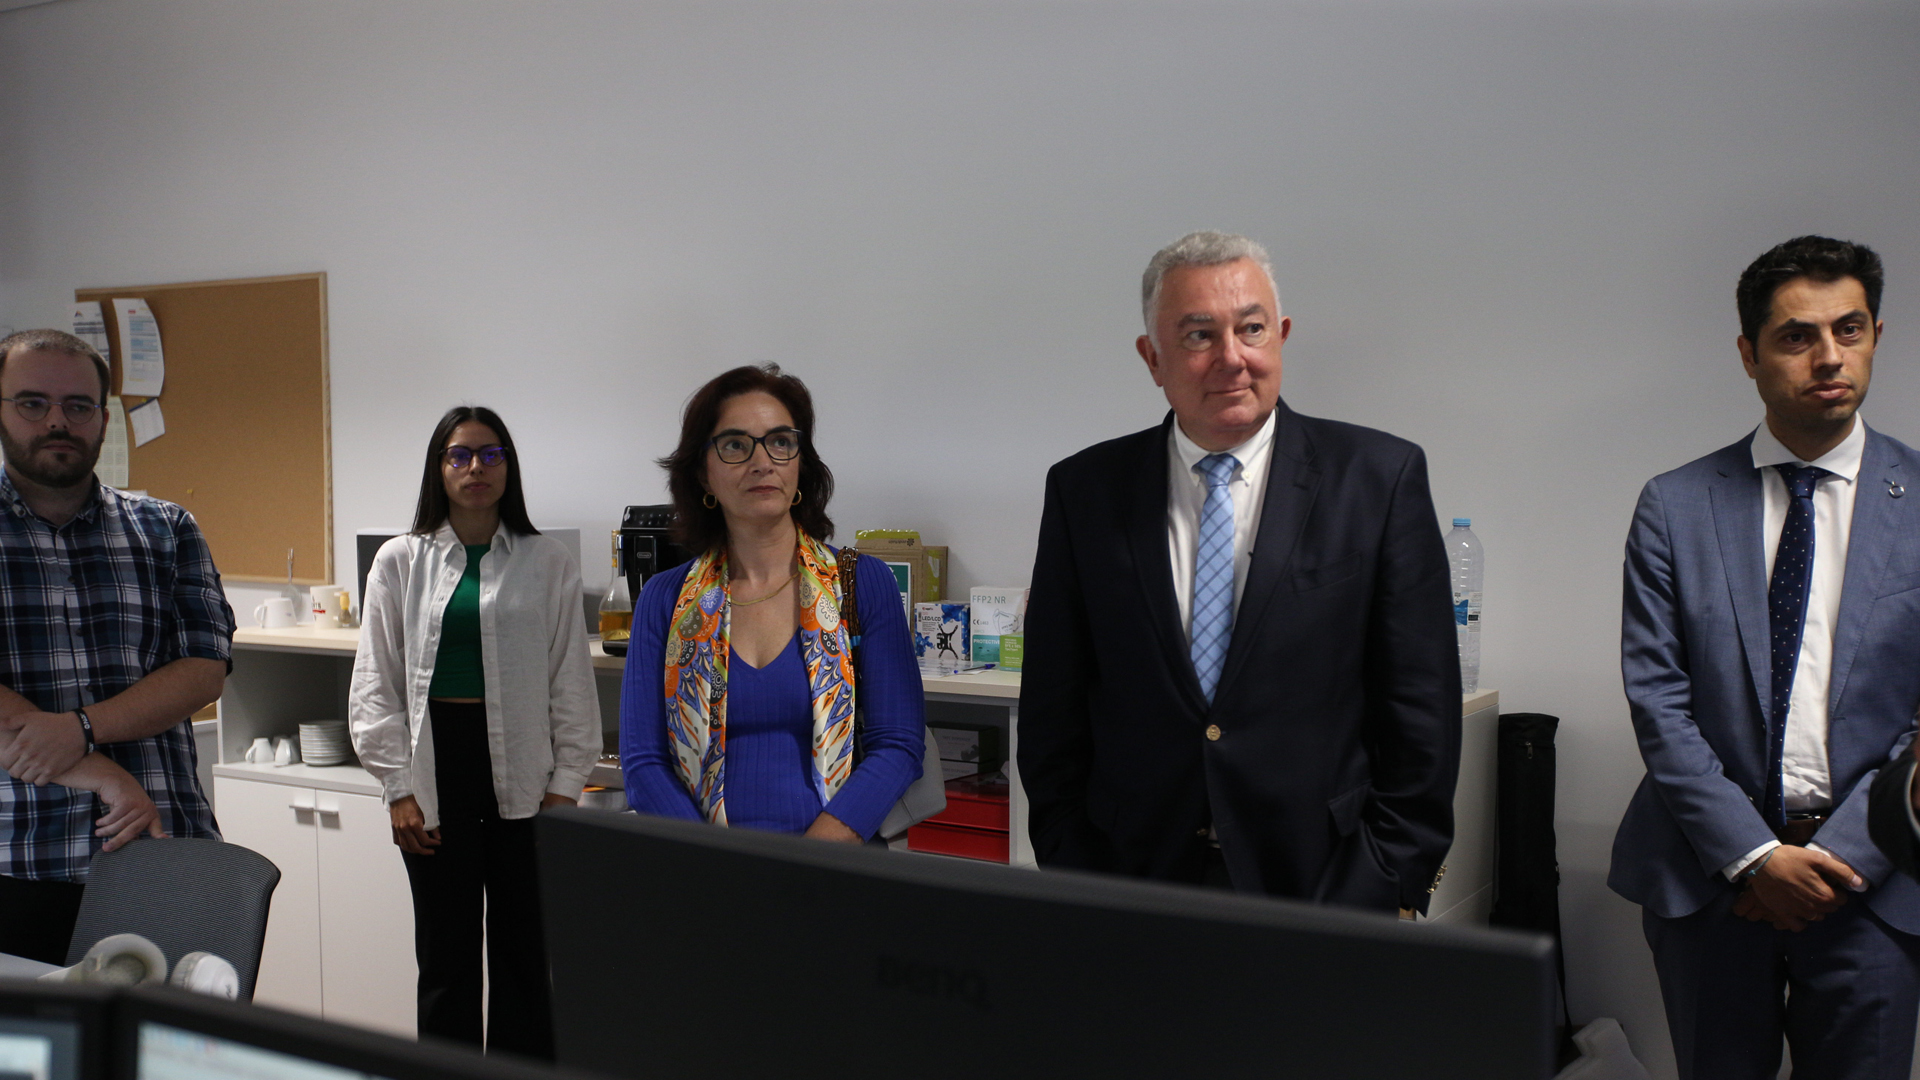 Acompanha a Ministra da Ciência Tecnologia e Ensino Superior, Elvira Fortunato, numa visita ao AIR Centre.